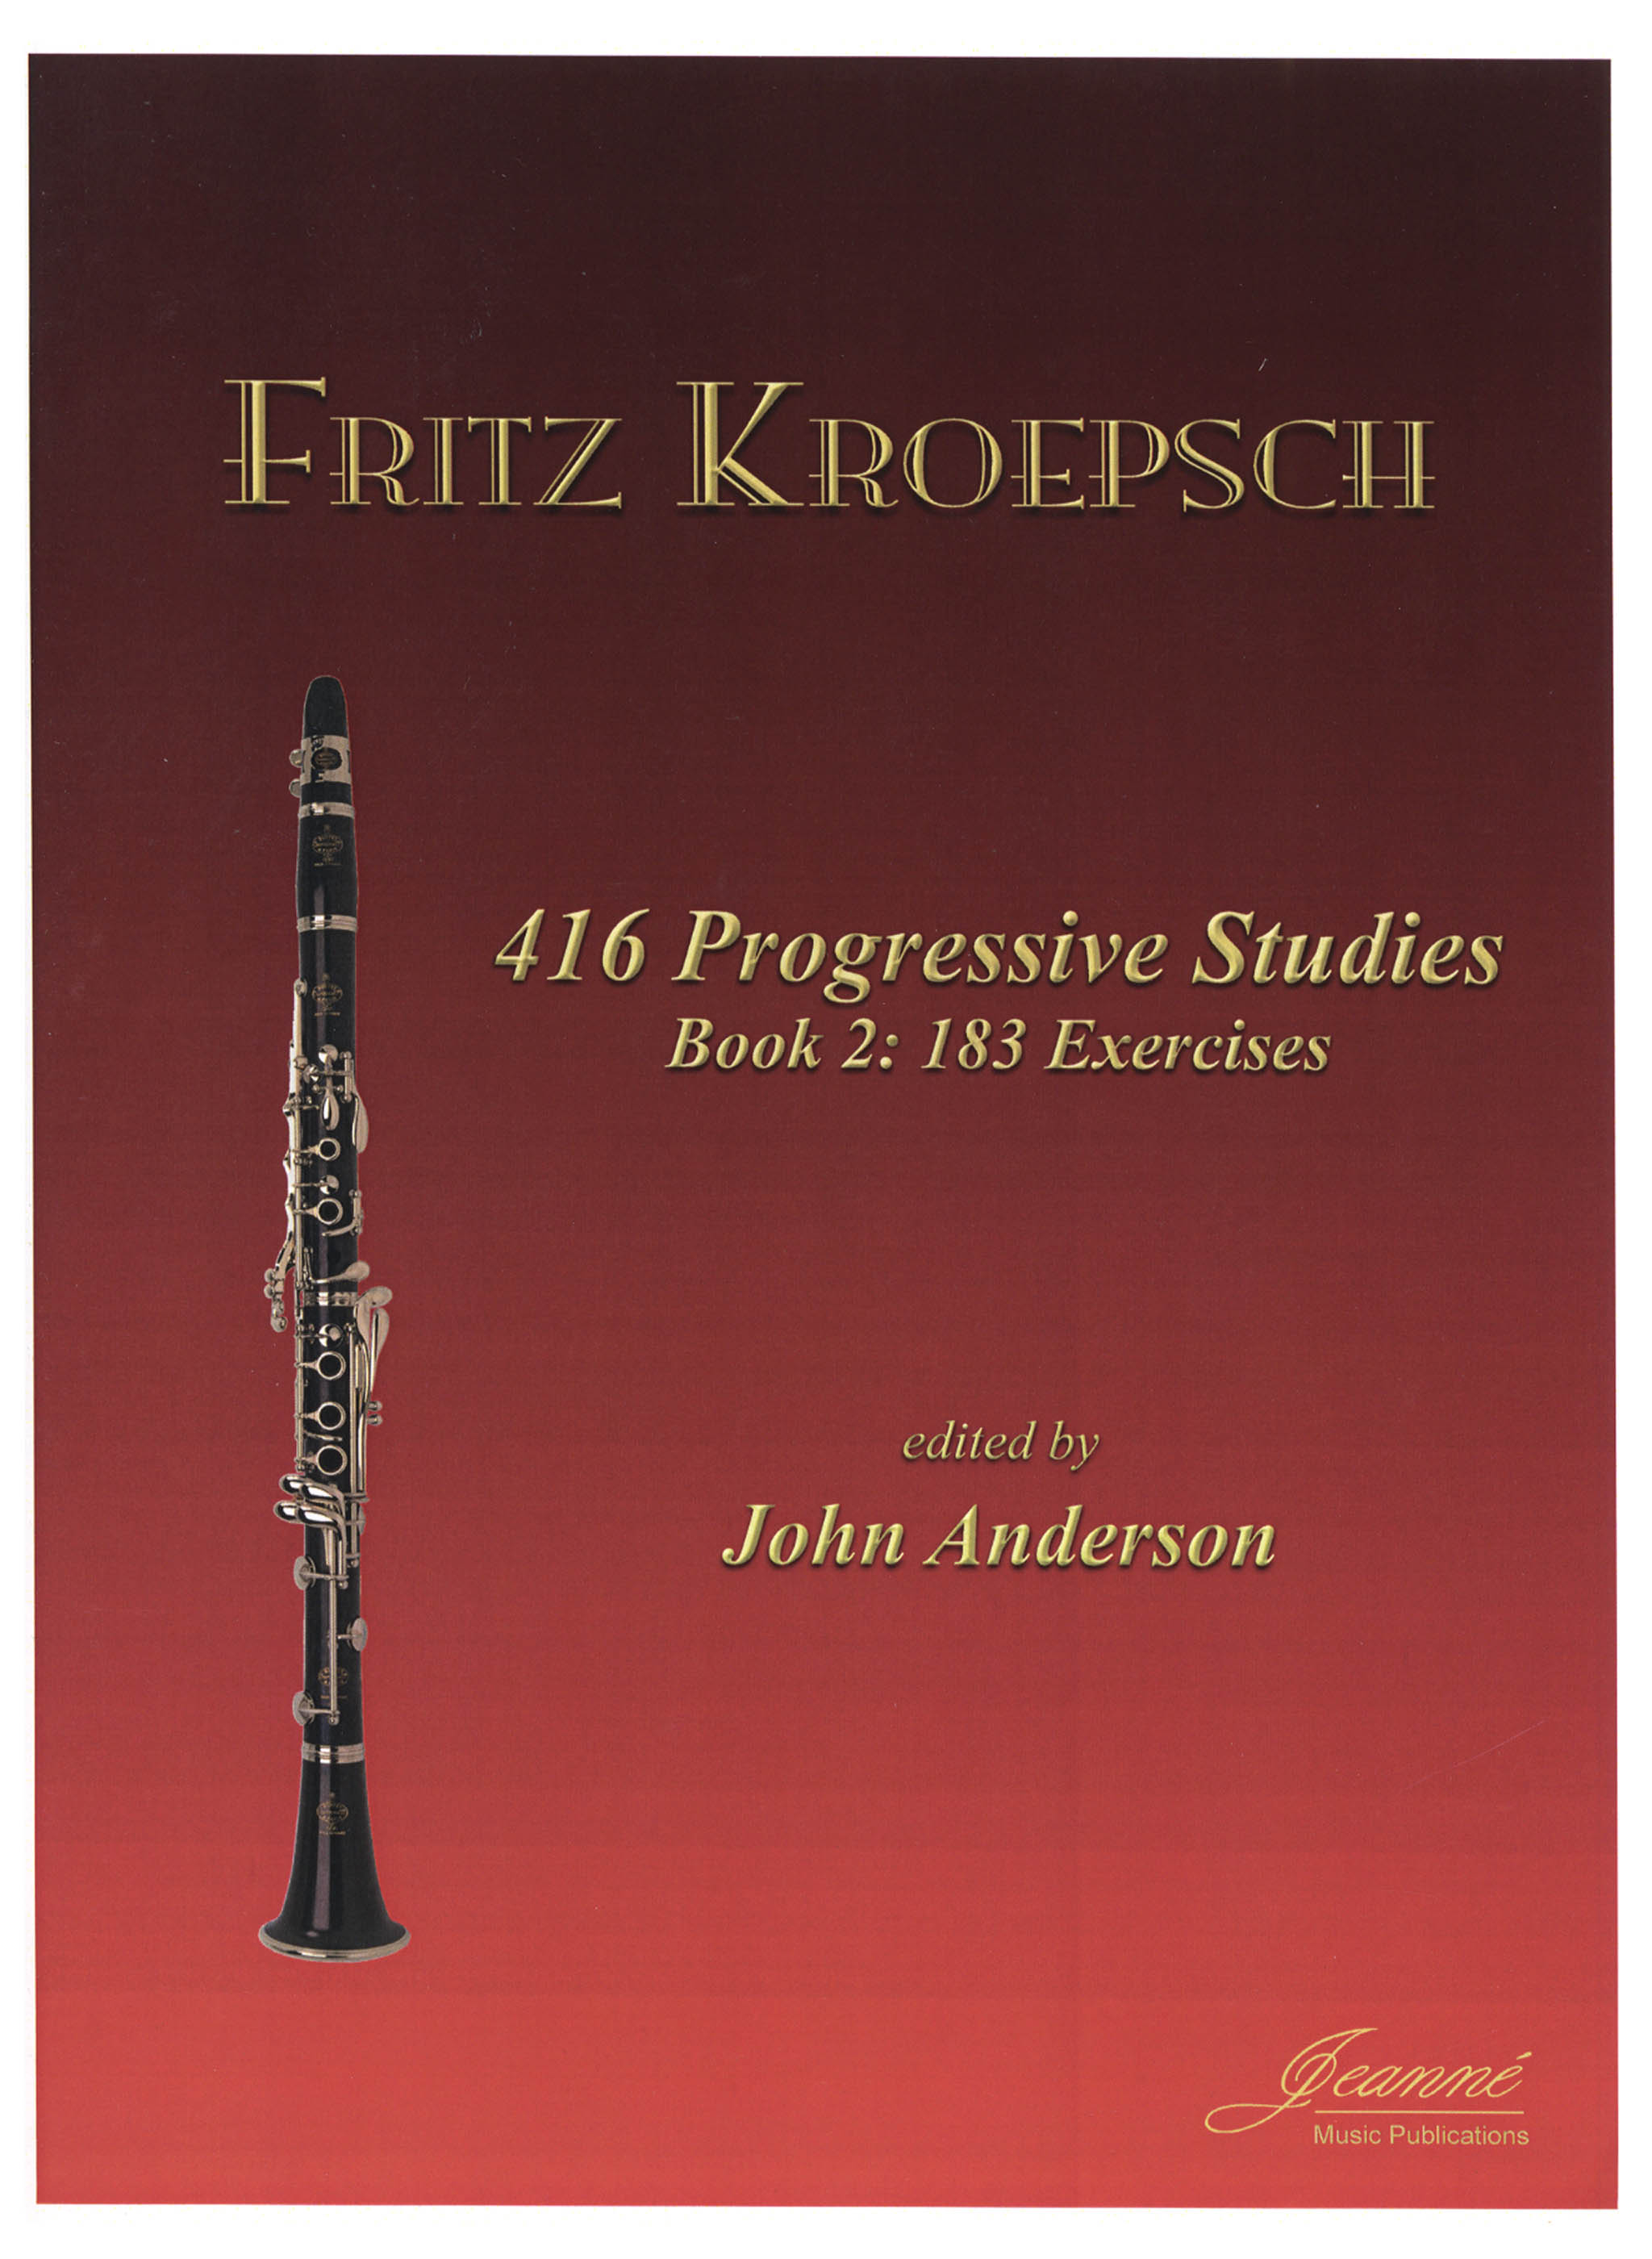 Kroepsch 416 Progressive Studies, Book 2 Cover